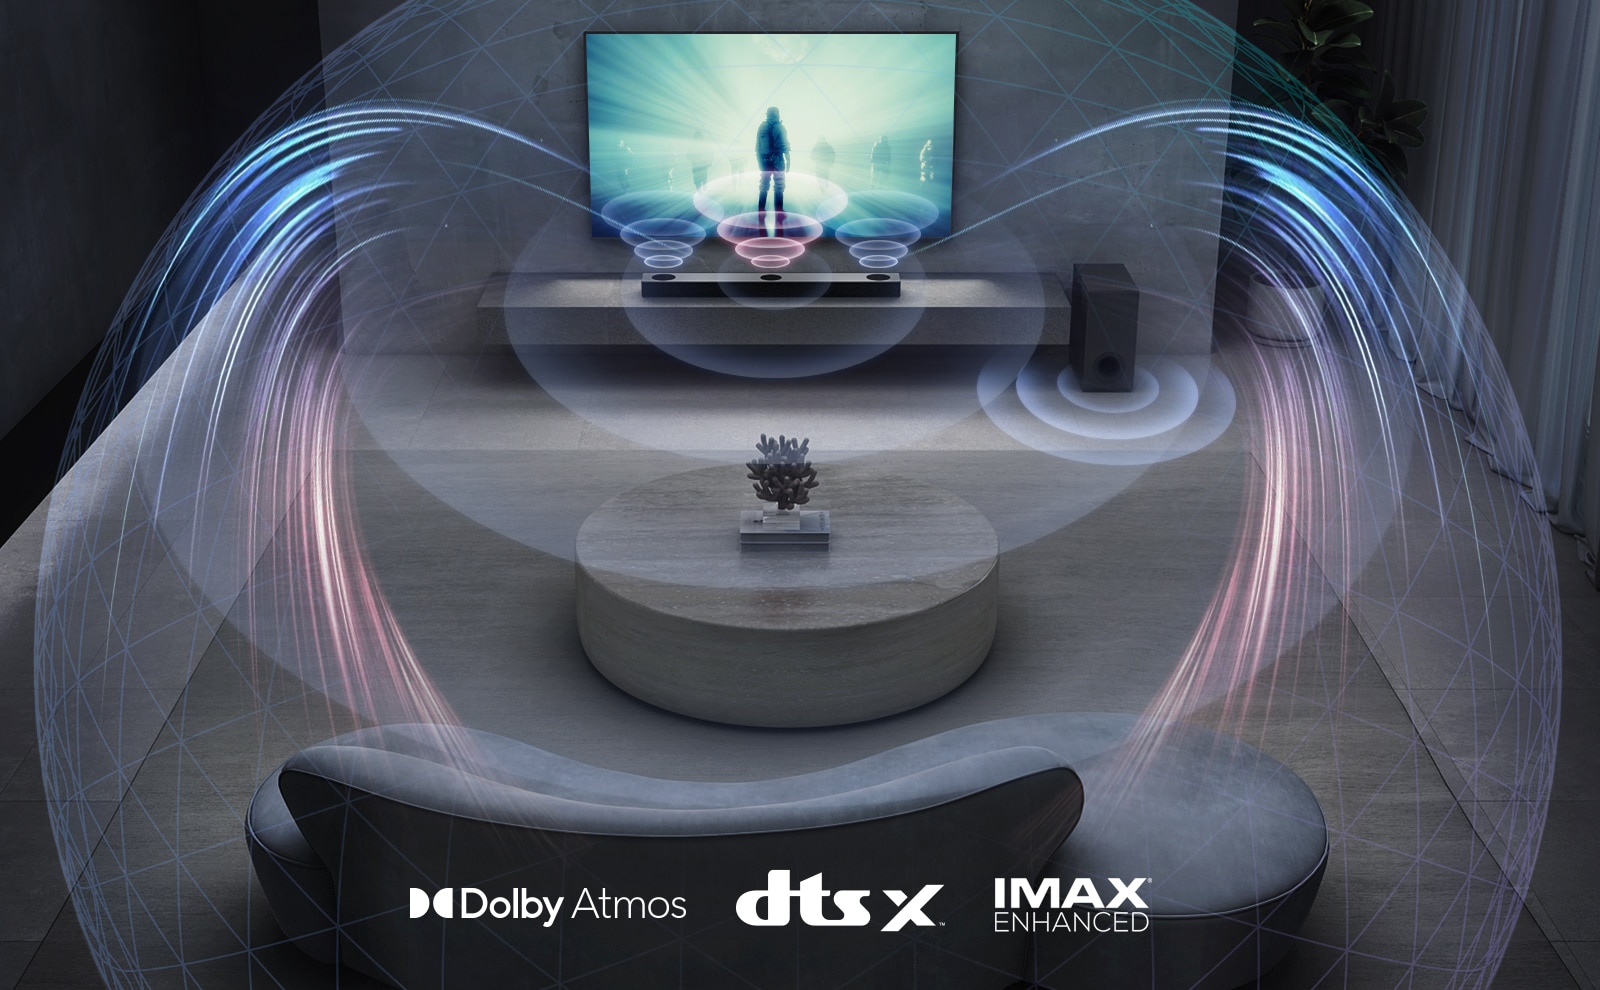 Dans le salon, le téléviseur LG est accroché au mur. Un film est diffusé sur l’écran du téléviseur. La barre de son LG se trouve juste en dessous du téléviseur sur une étagère grise avec un caisson de basses juste à côté. Un ensemble de 2 haut-parleurs arrière se trouve au fond du salon. Des graphismes représentant des effets sonores sortent de tous les haut-parleurs. Dolby Atmos et DTS:X, logo IMAX Enhanced affichés au milieu au bas de l’image.